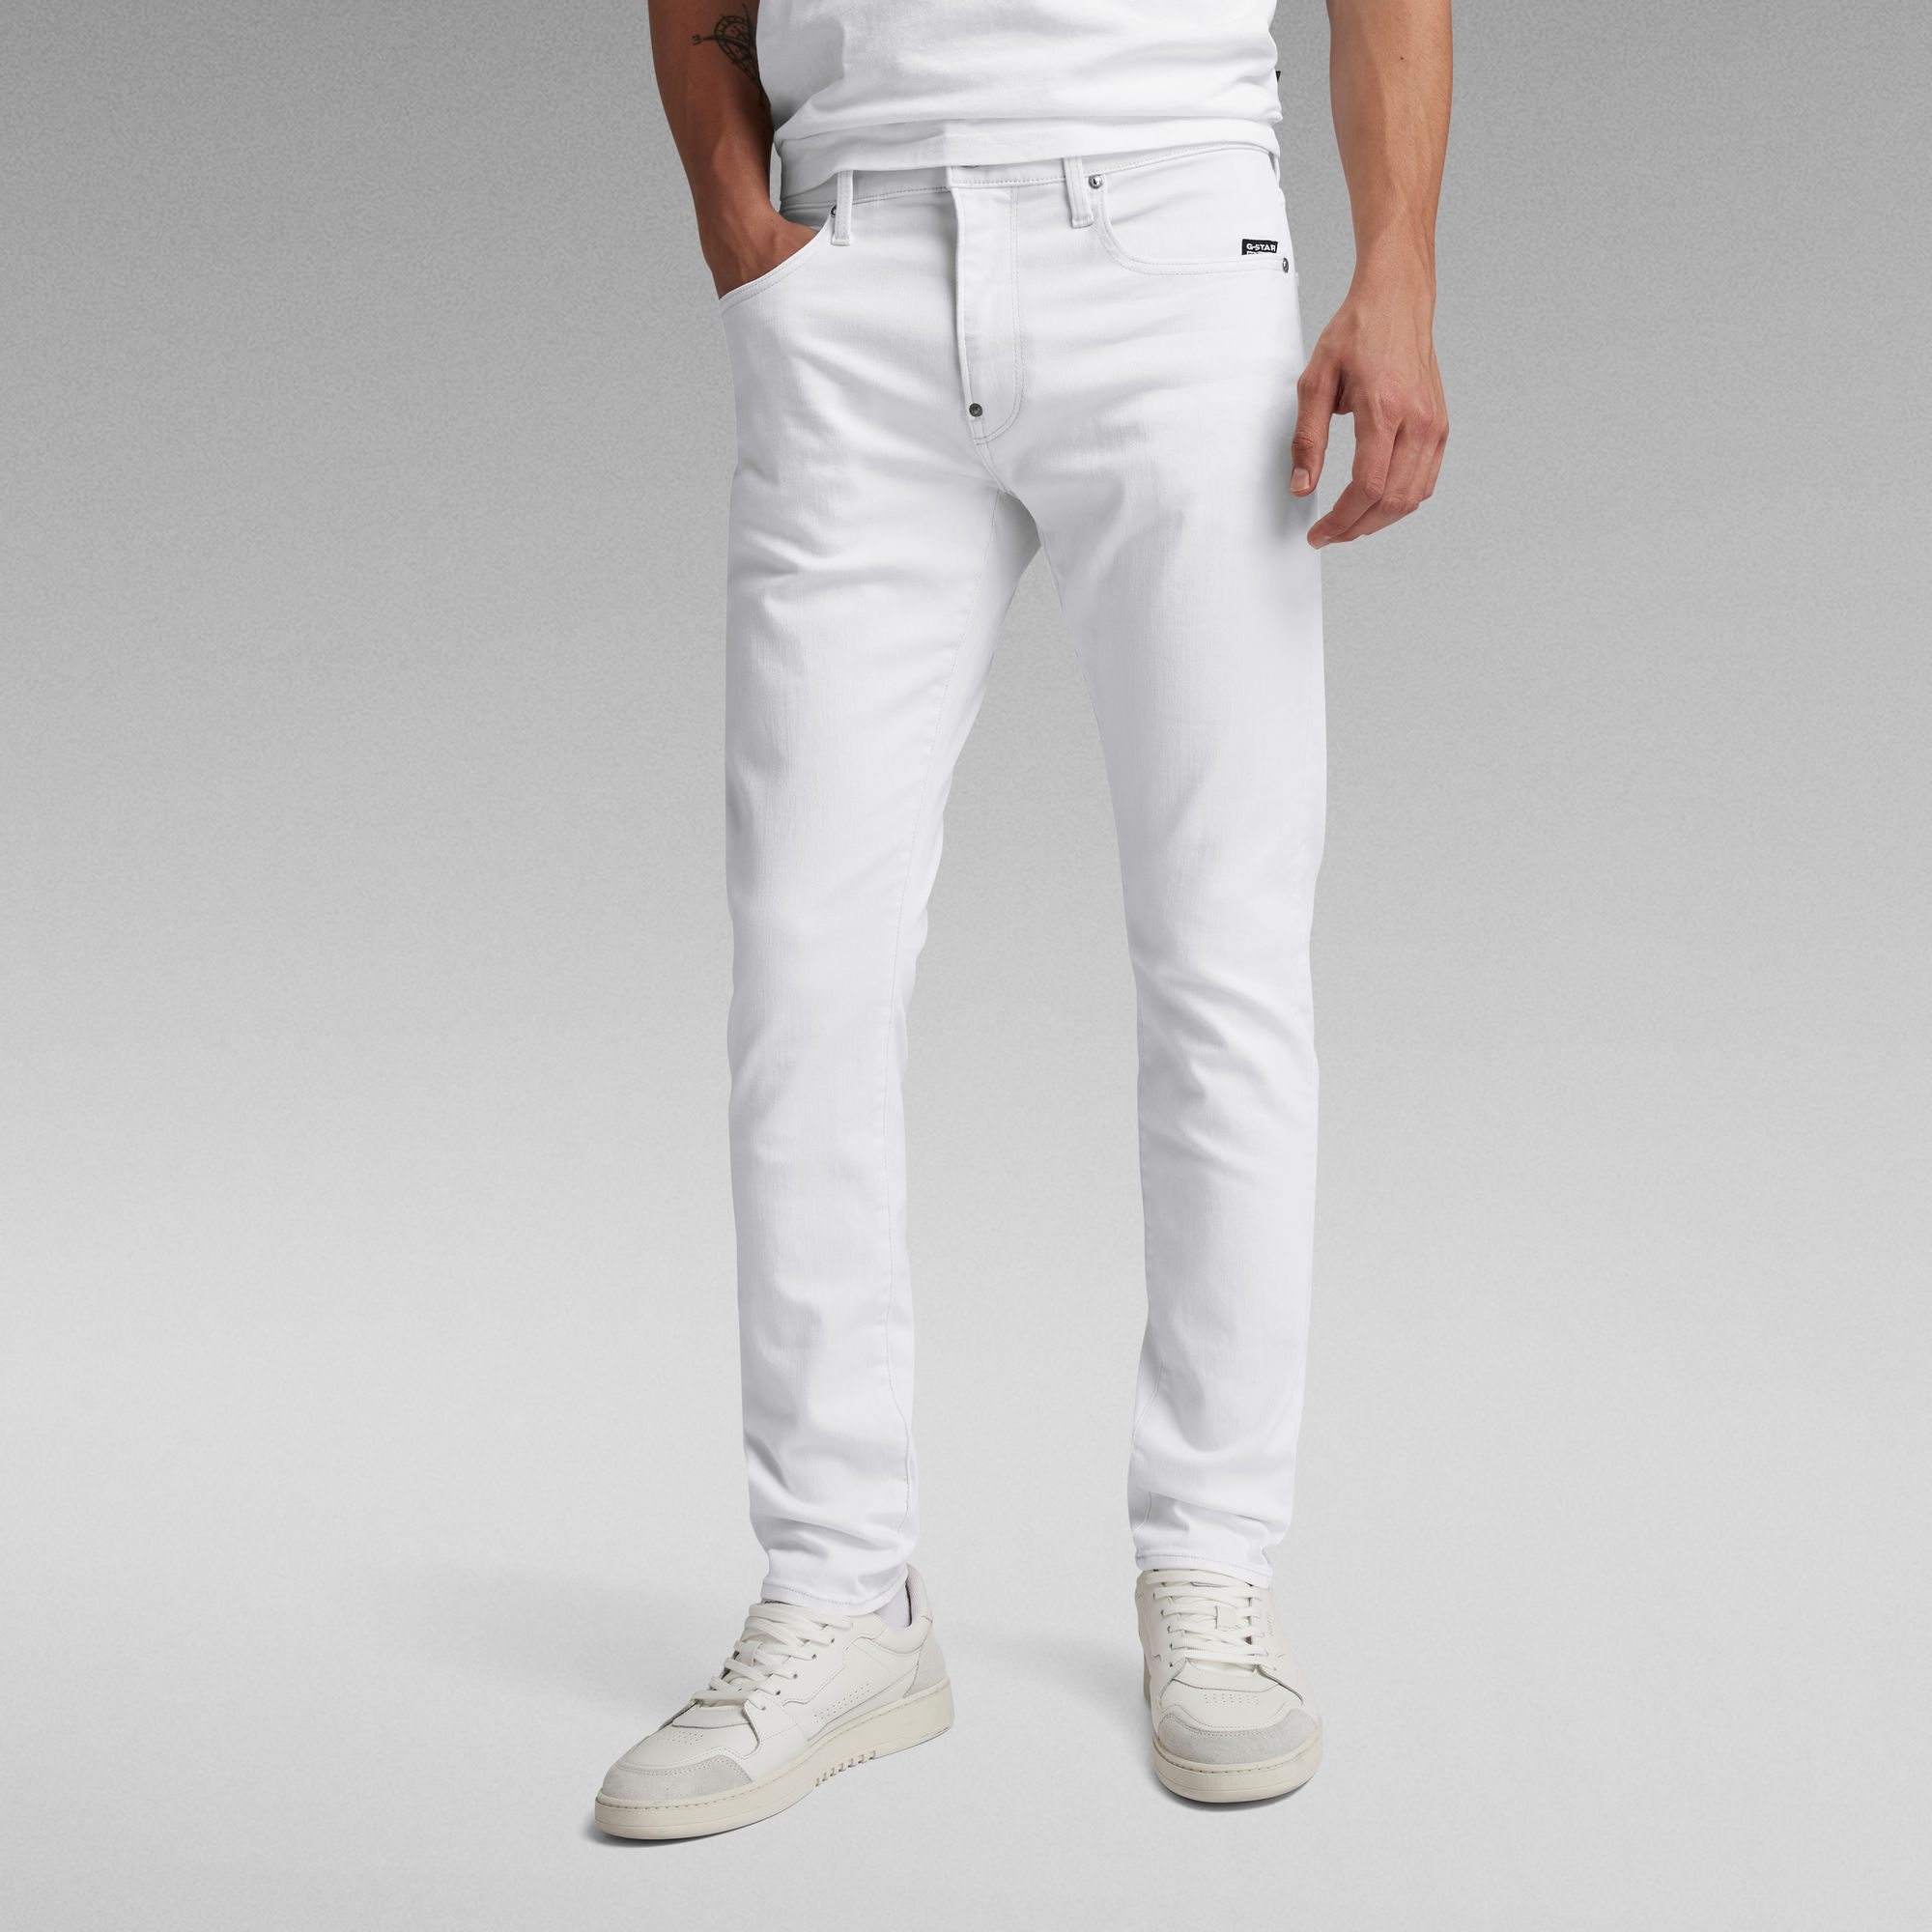 

Revend FWD Skinny Jeans - White - Men